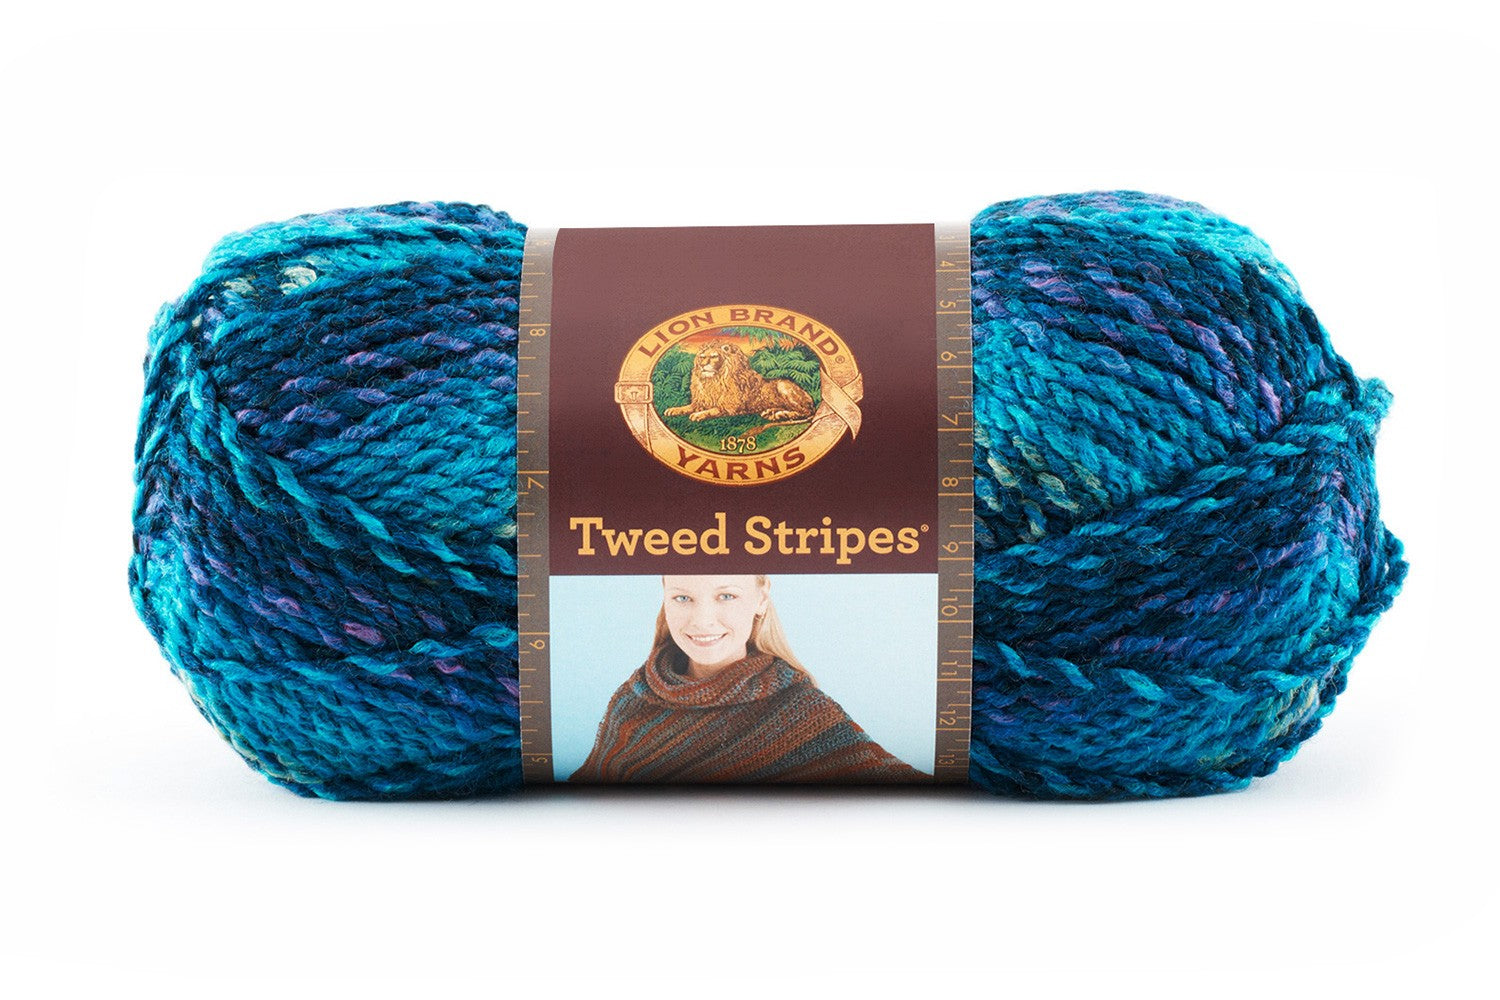 Lion Brand Fisherman's Wool Yarn-Oak Tweed, Multipack Of 3